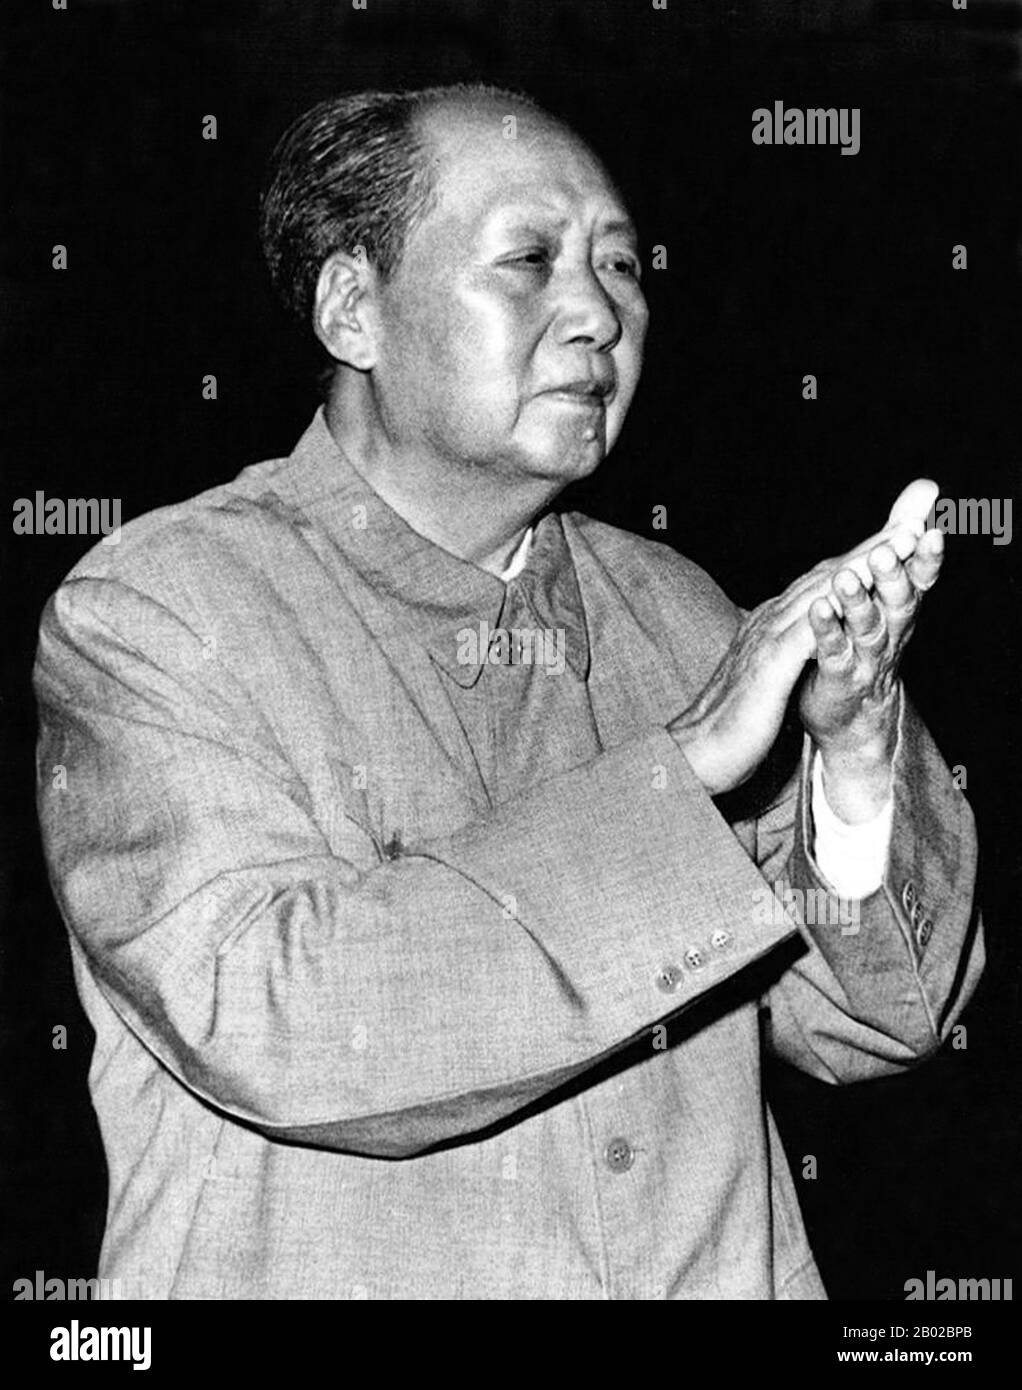 Mao Zedong, anche traslitterato come Mao Tse-tung (26 dicembre 1893 – 9 settembre 1976), è stato un rivoluzionario comunista cinese, guerriglia stratega, autore, teorico politico, e leader della Rivoluzione cinese. Comunemente chiamato Chairman Mao, fu l'architetto della Repubblica Popolare Cinese (PRC) dal suo insediamento nel 1949, e tenne il controllo autoritario sulla nazione fino alla sua morte nel 1976. Il contributo teorico del MAO al marxismo-leninismo, insieme alle sue strategie militari e al marchio delle politiche politiche, è ora conosciuto collettivamente come maoismo. Foto Stock